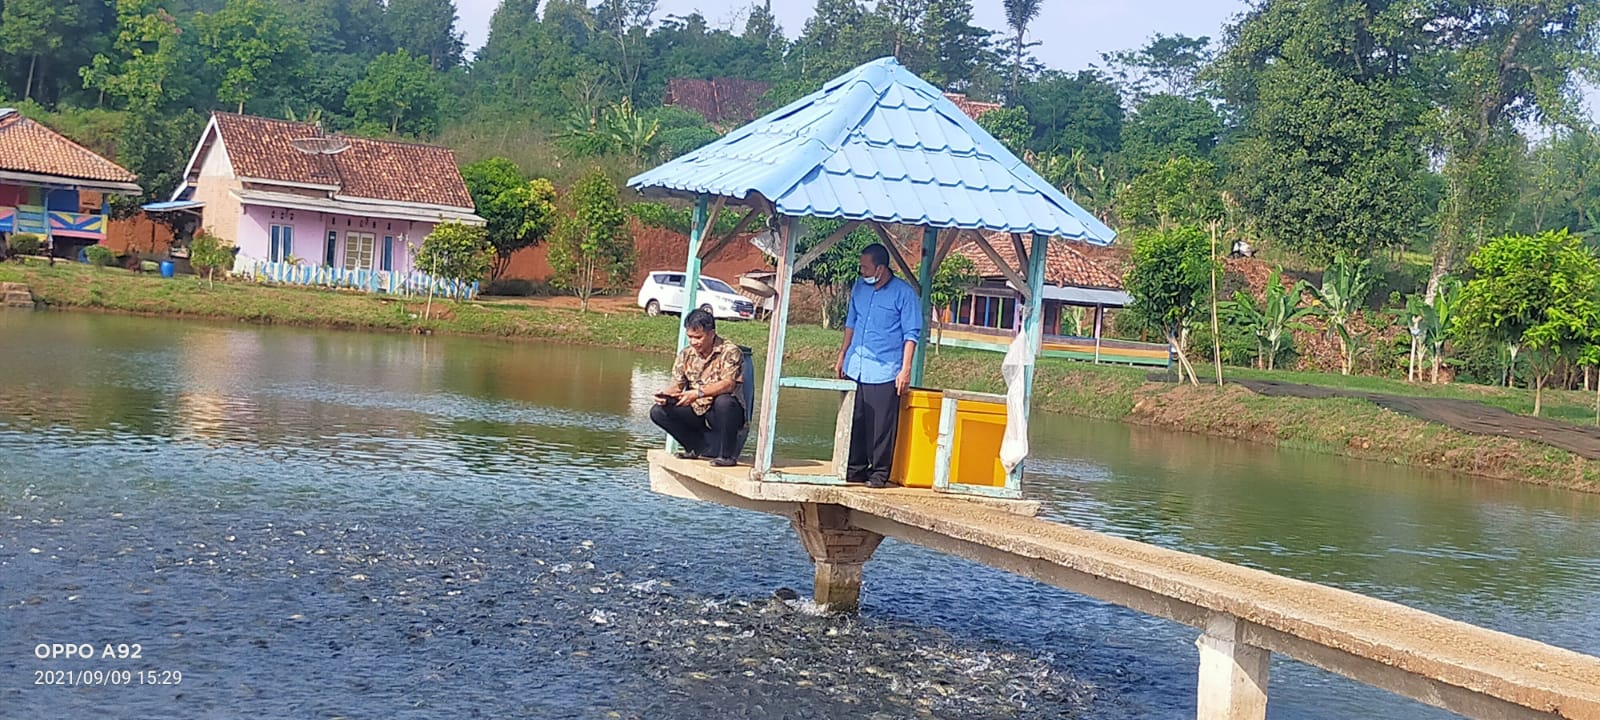 Budidaya Ikan Air Tawar di Lampura Perlu Perhatian Pemerintah